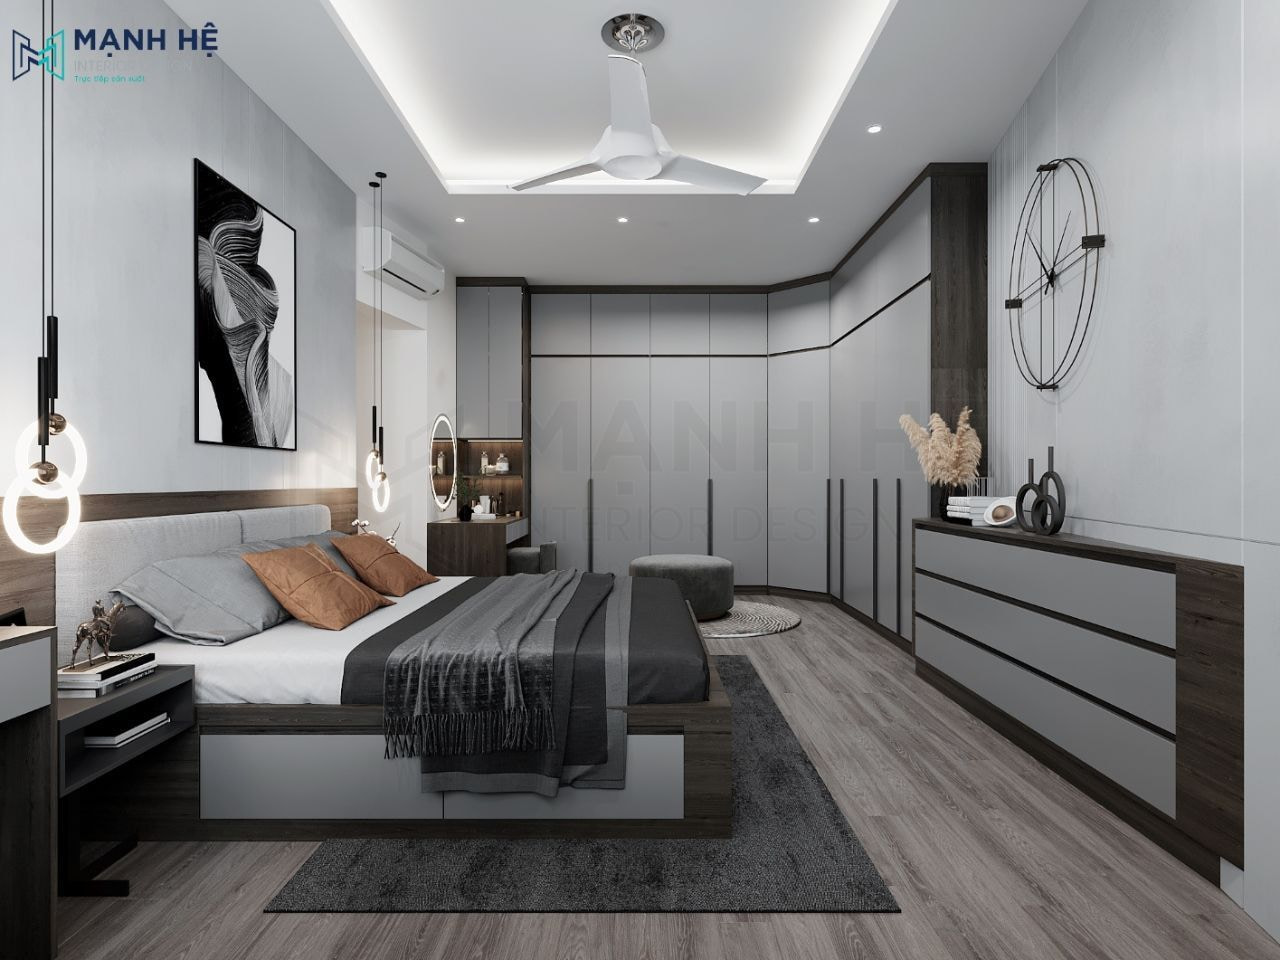 Gợi ý 8 mẫu thiết kế nội thất phòng ngủ đẹp và hiện đại